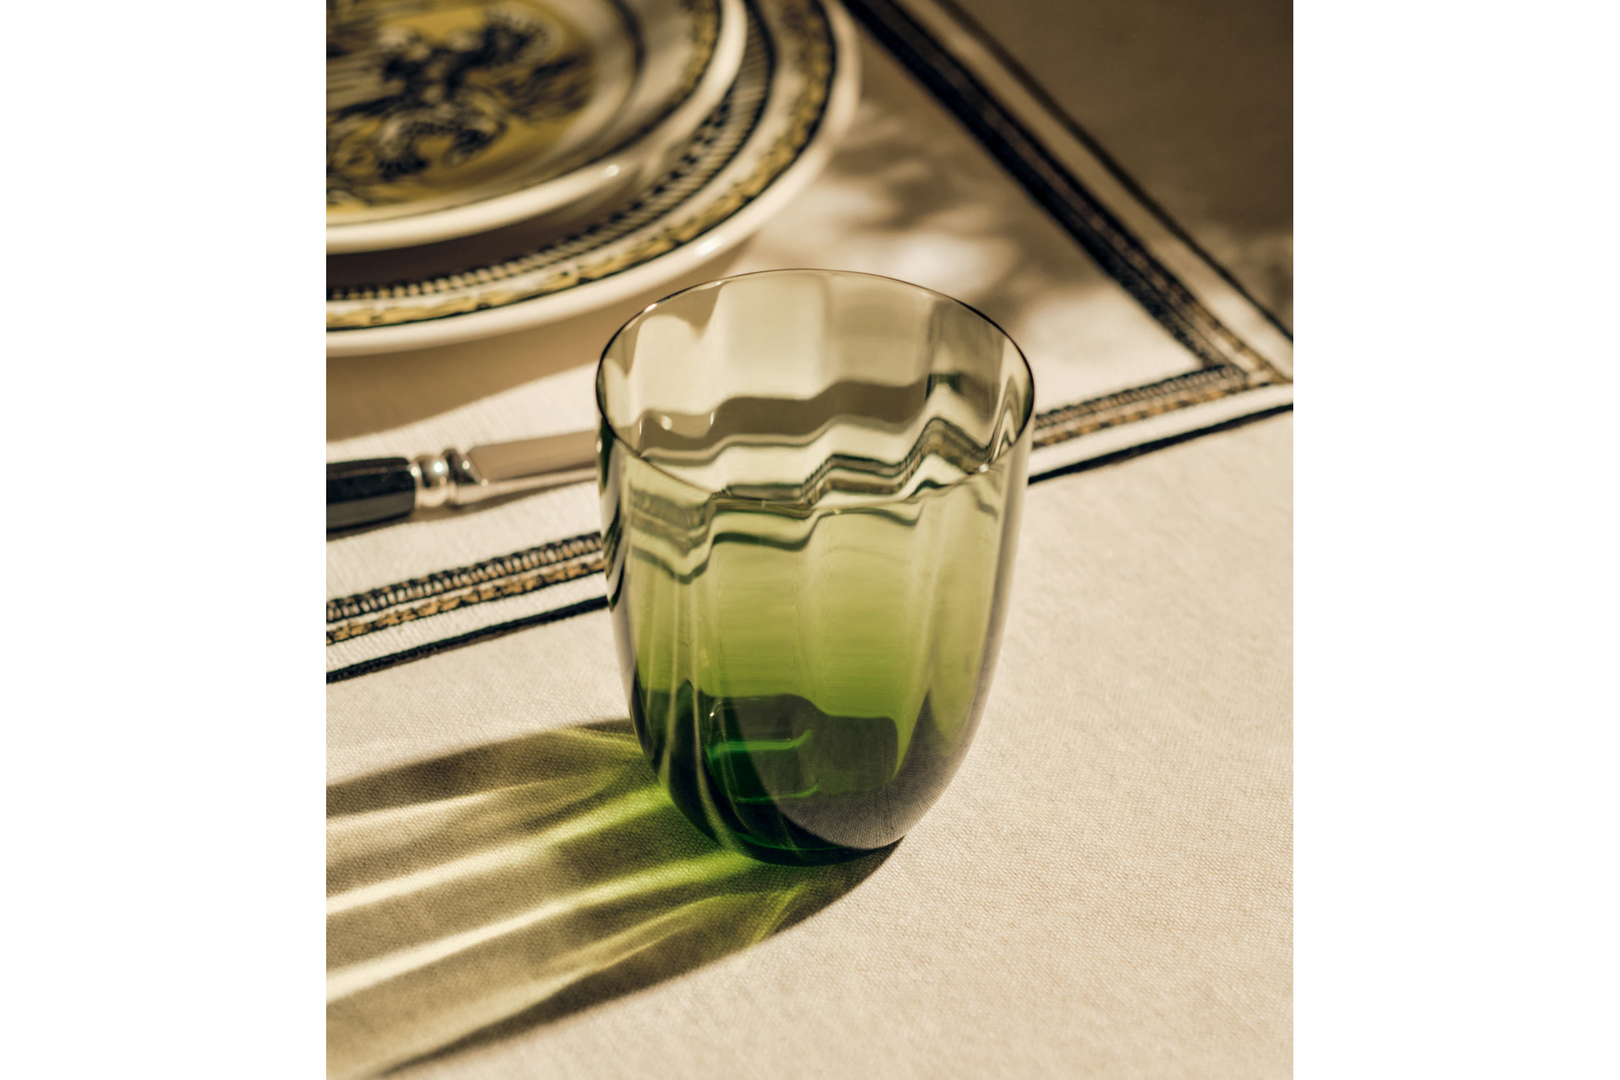 Najpovoljniji komad u kolekciji je elegantna čaša čija cijena je 100 eura